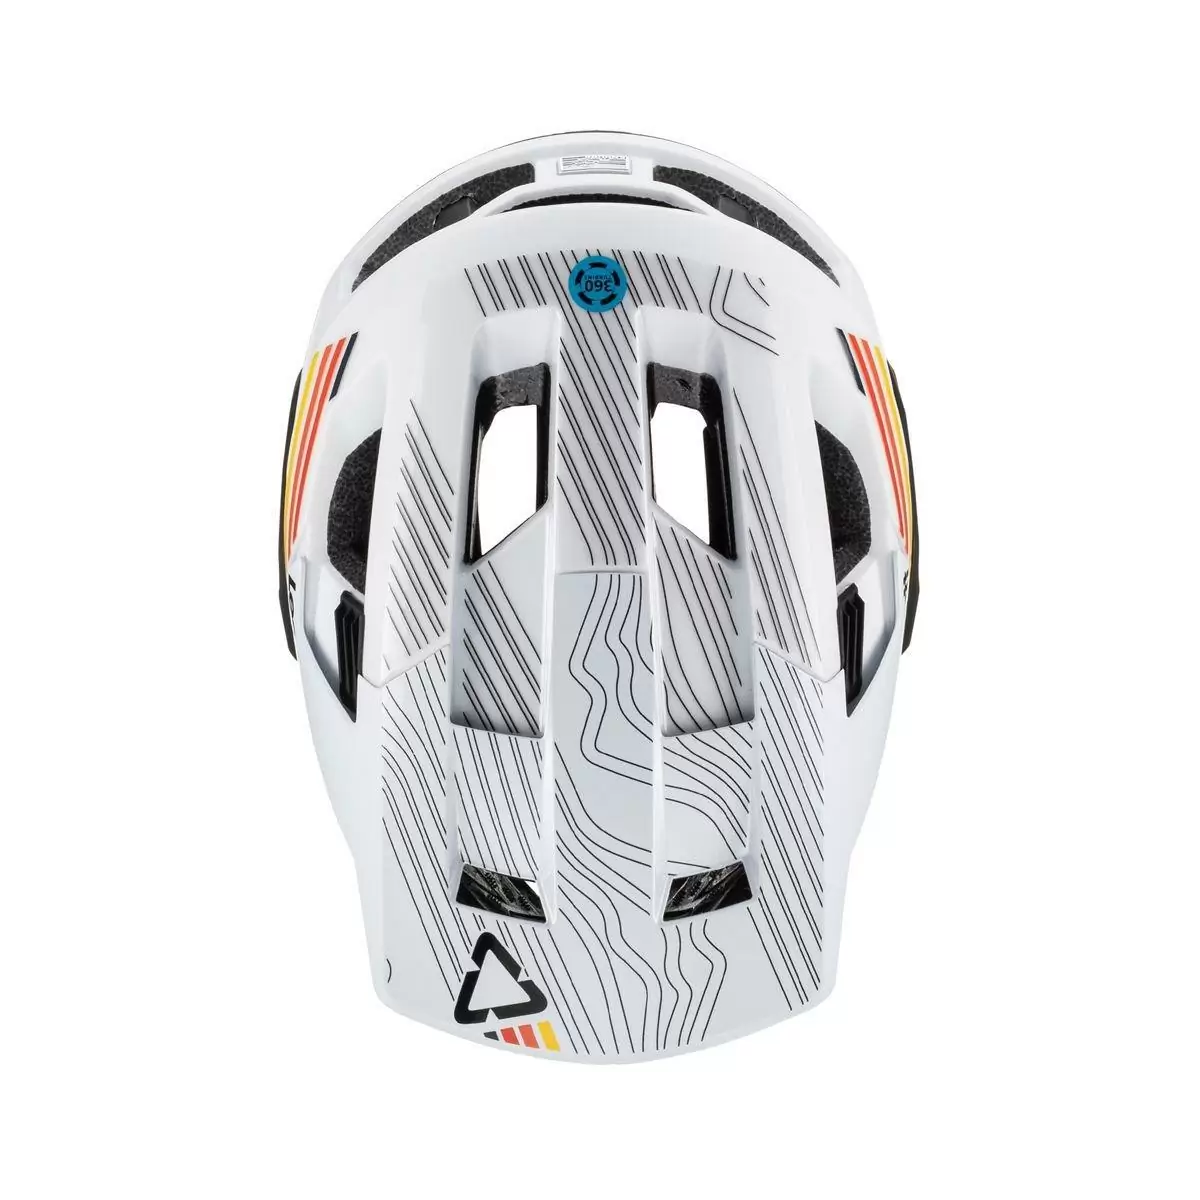 Full-Face Helmet MTB 4.0 Enduro Removable Chinguard White/Black Size S (51-55cm) #4